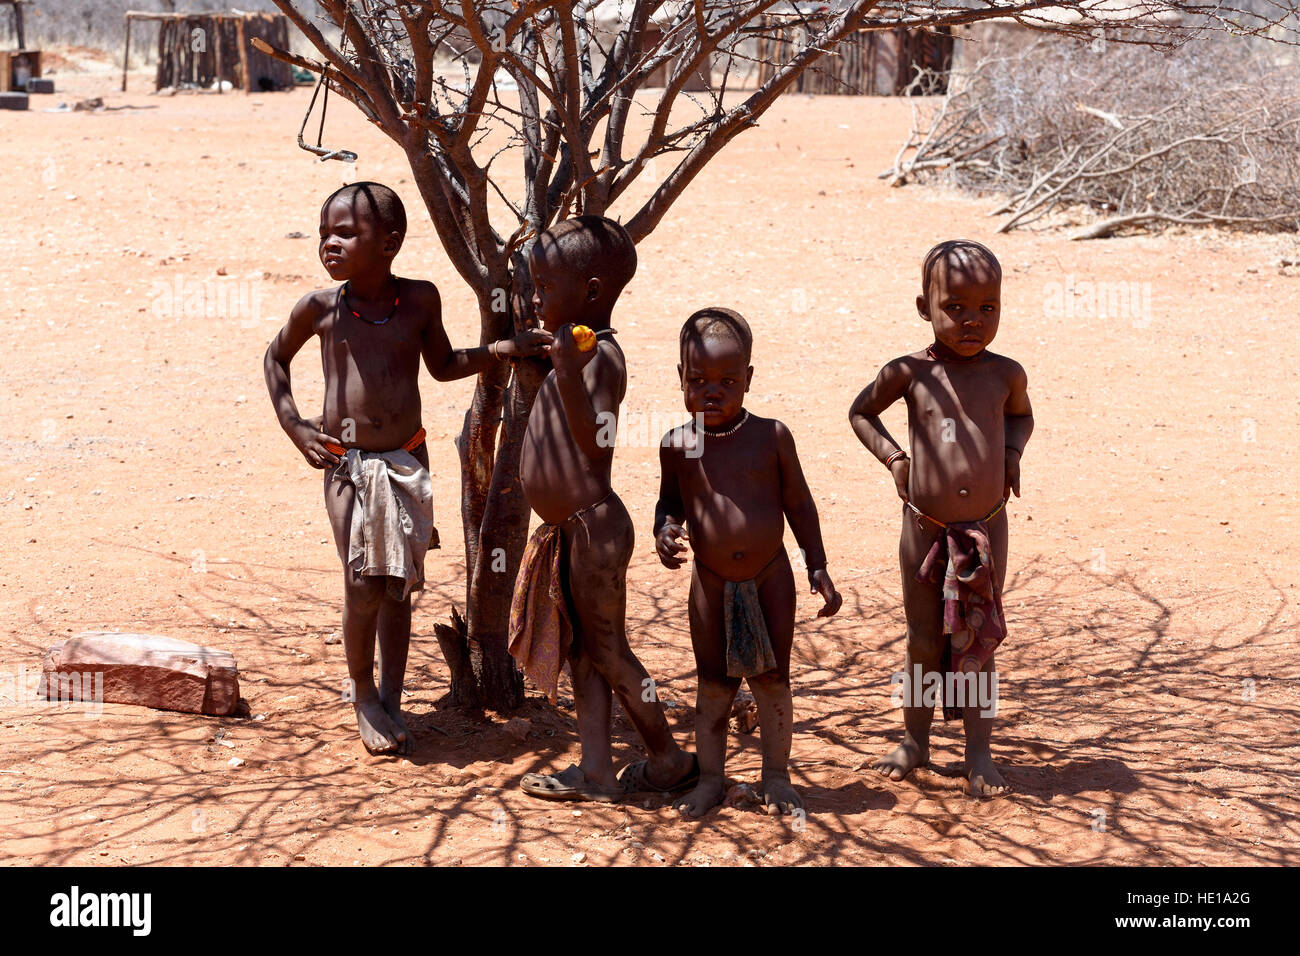 La Namibie, KAMANJAB, 10 octobre : enfant non identifié tribu Himba. Les himbas sont des peuples autochtones vivant dans le nord de la Namibie, dans la région de Kunene afin Banque D'Images